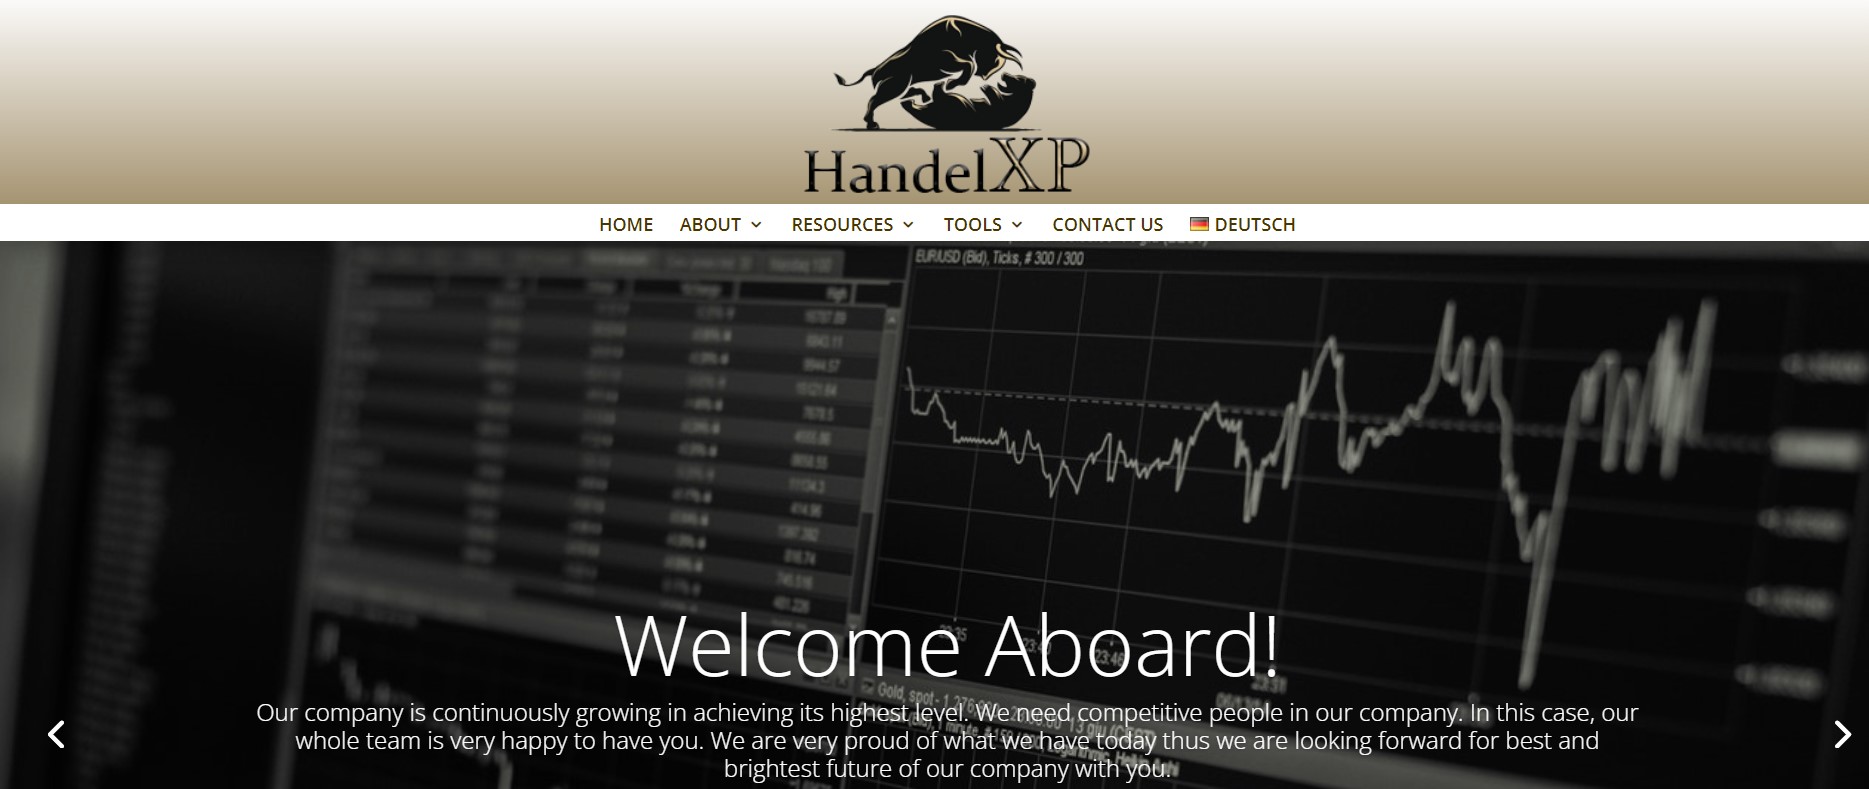 HandelXP website